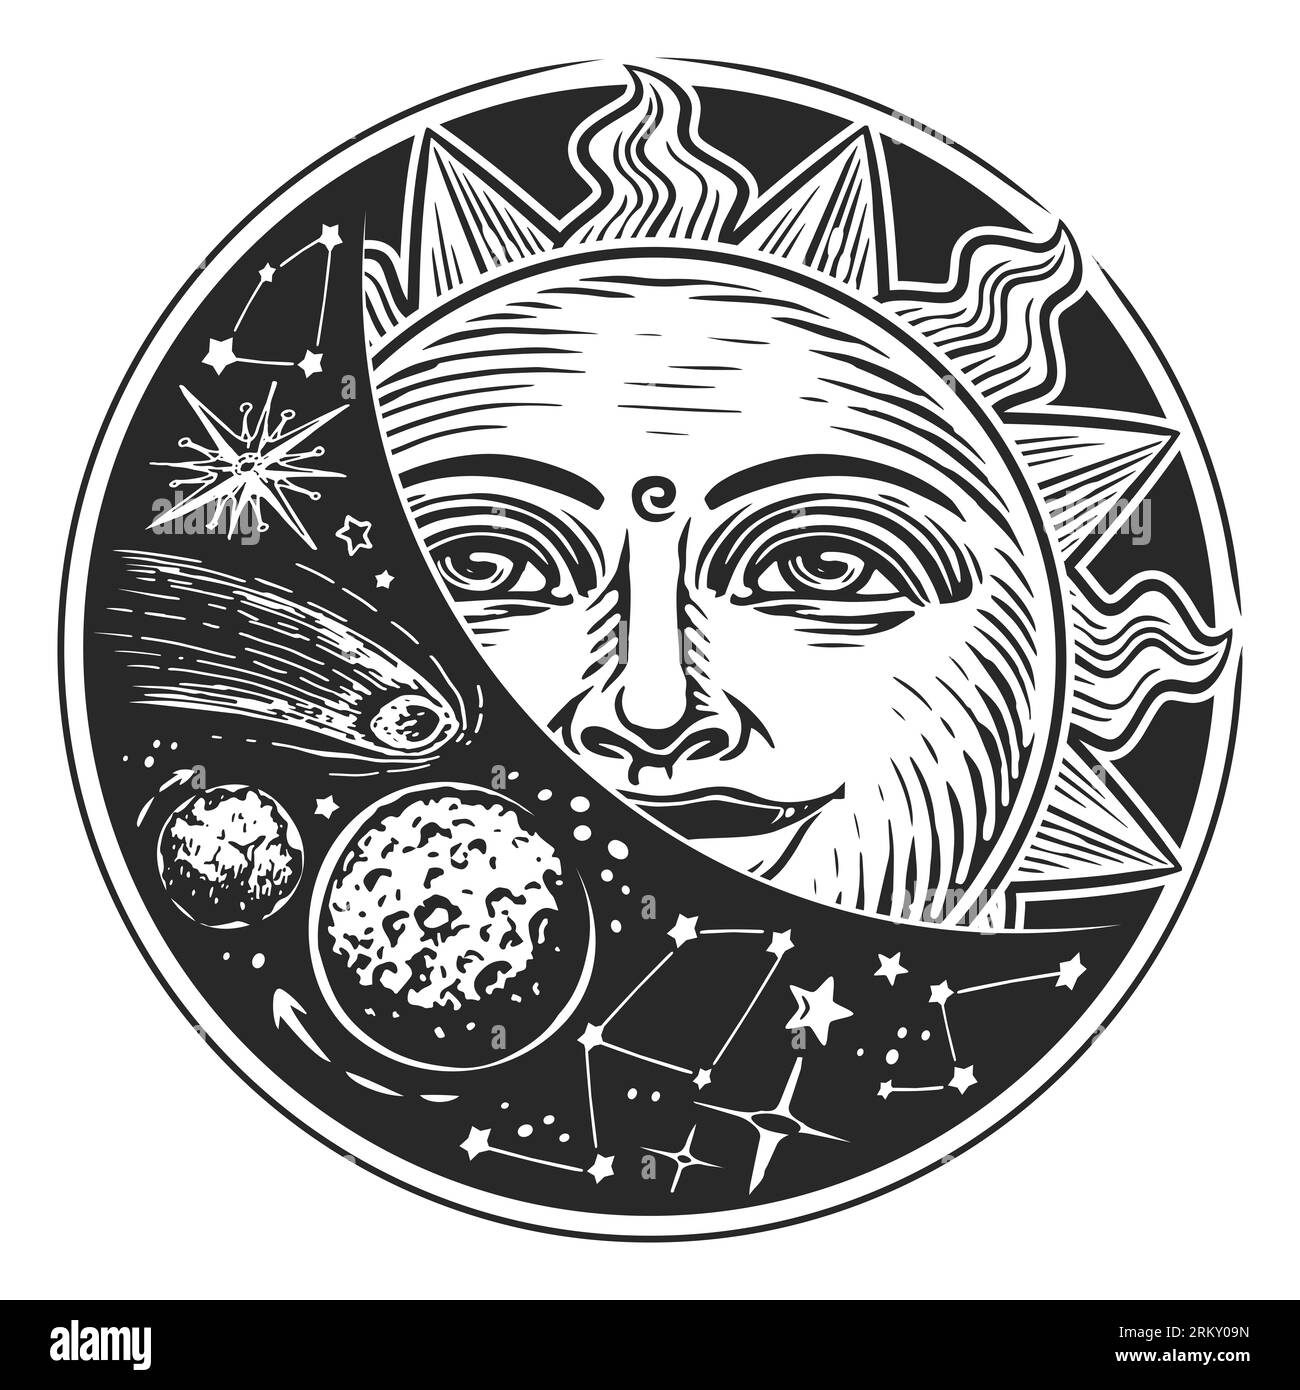 Sonne und Sterne im Weltraum. Astrologiekonzept. Illustration im Vintage-Stil Stockfoto